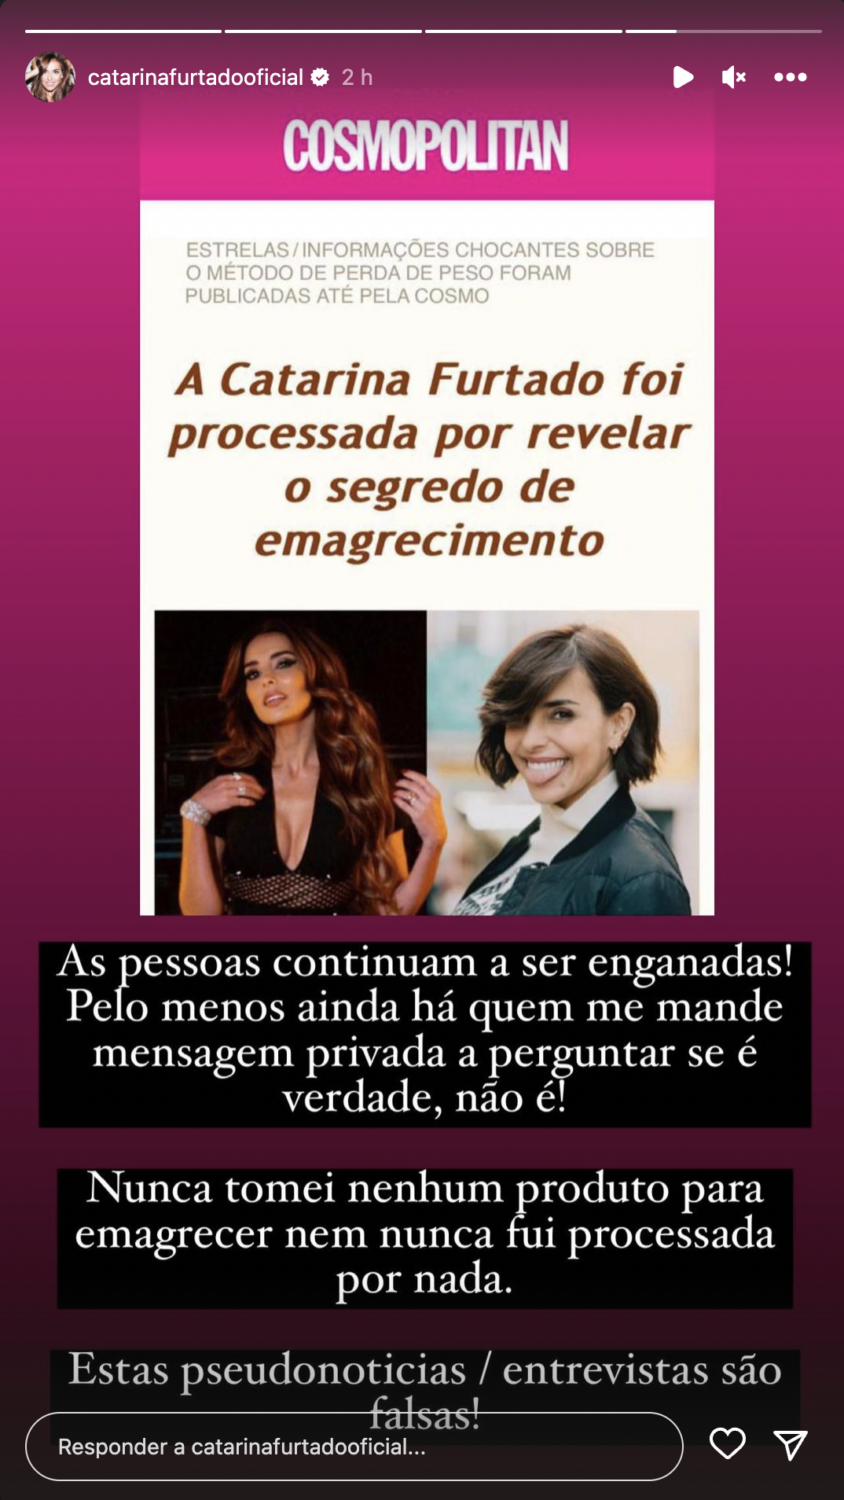 Indignada, Catarina Furtado reage a &#8220;pseudonotícias&#8221; sobre si: “As pessoas continuam a ser enganadas!”